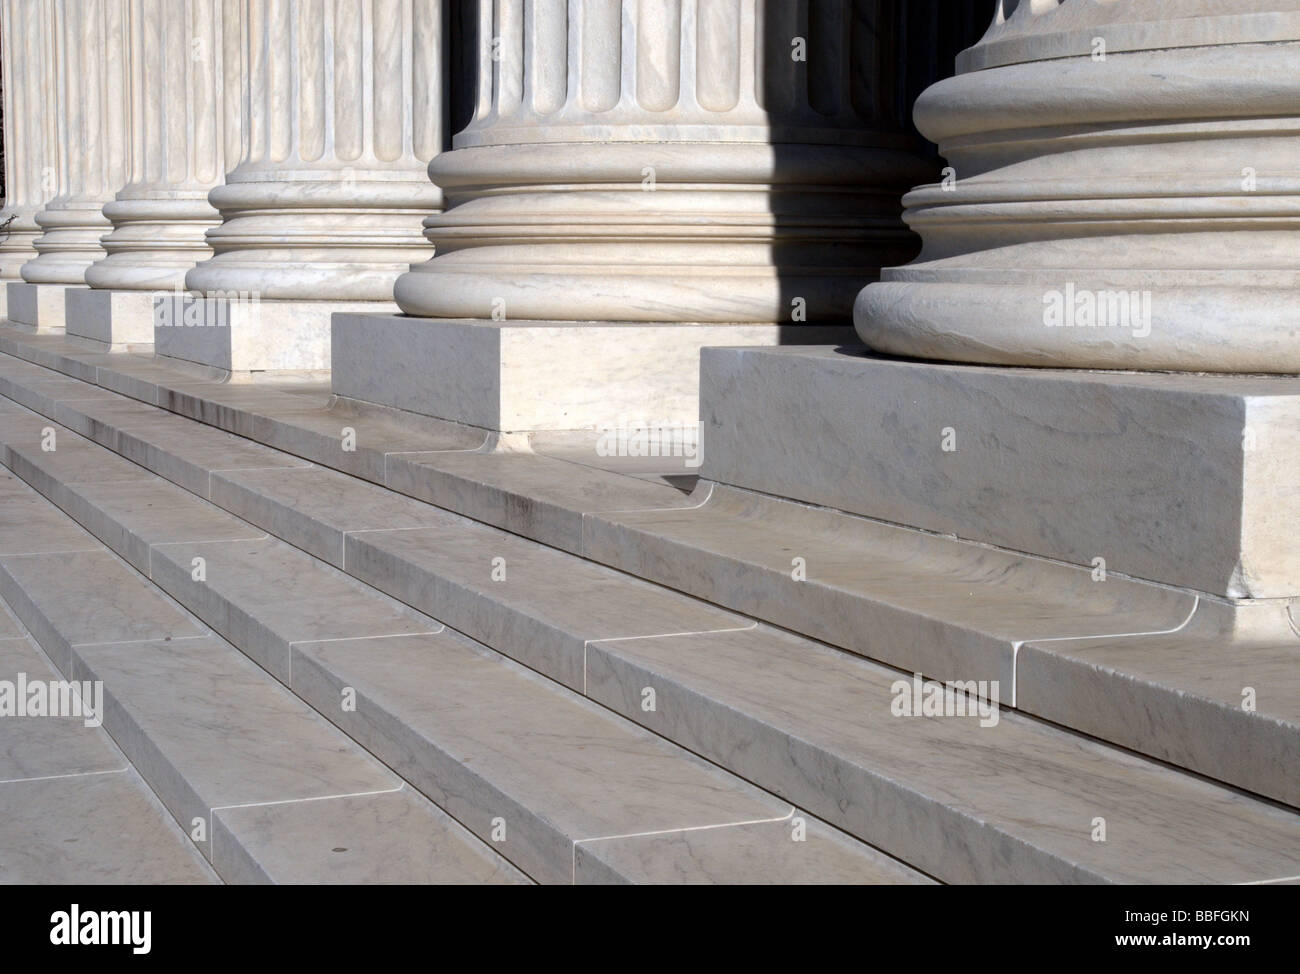 Säulen und Treppen des United States Supreme Court Gebäude in Washington, D.C. Stockfoto